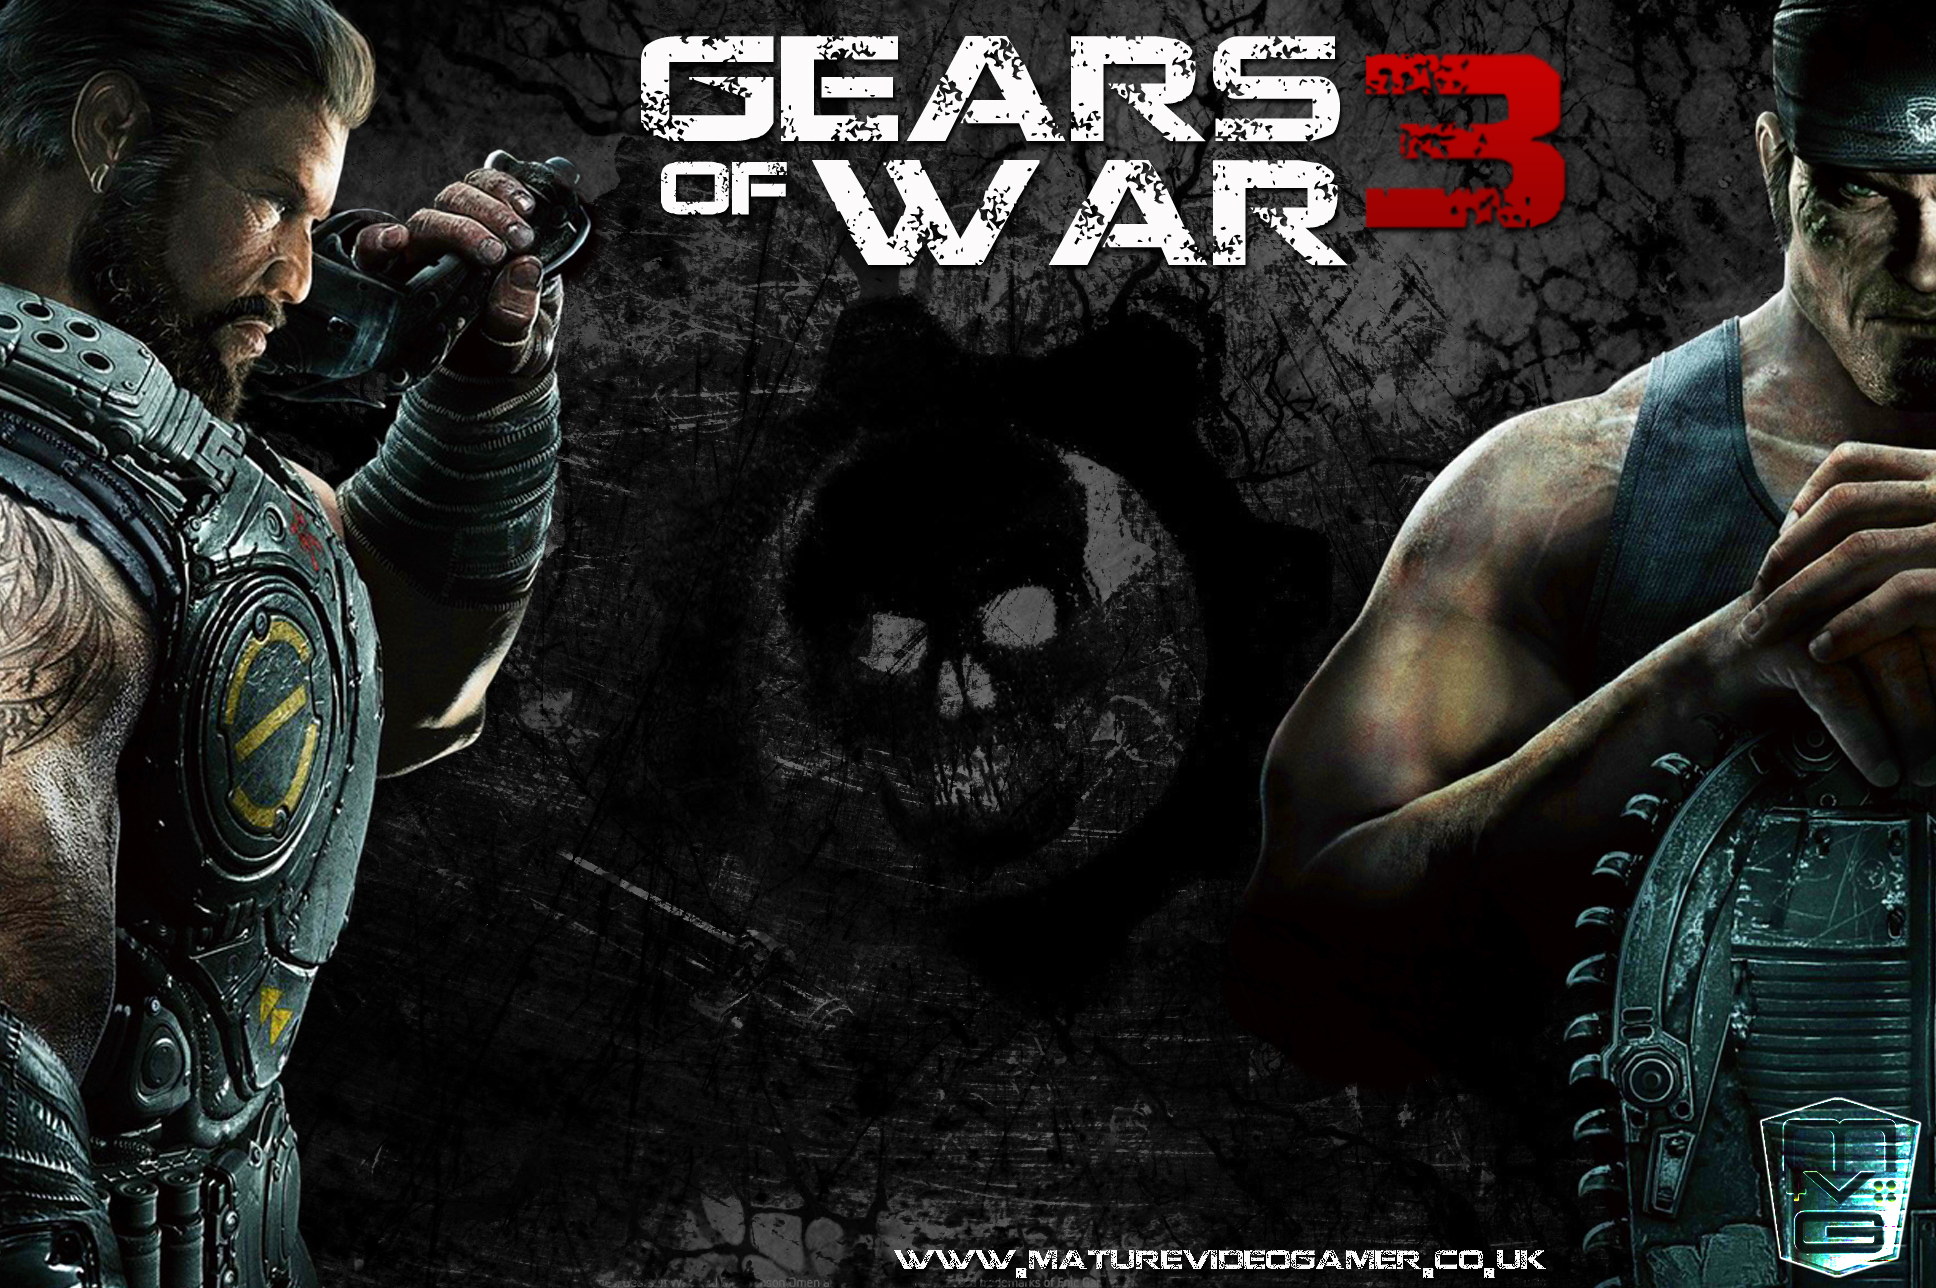 Gears of war 3 wallpaper by Deaddoll666 on DeviantArt